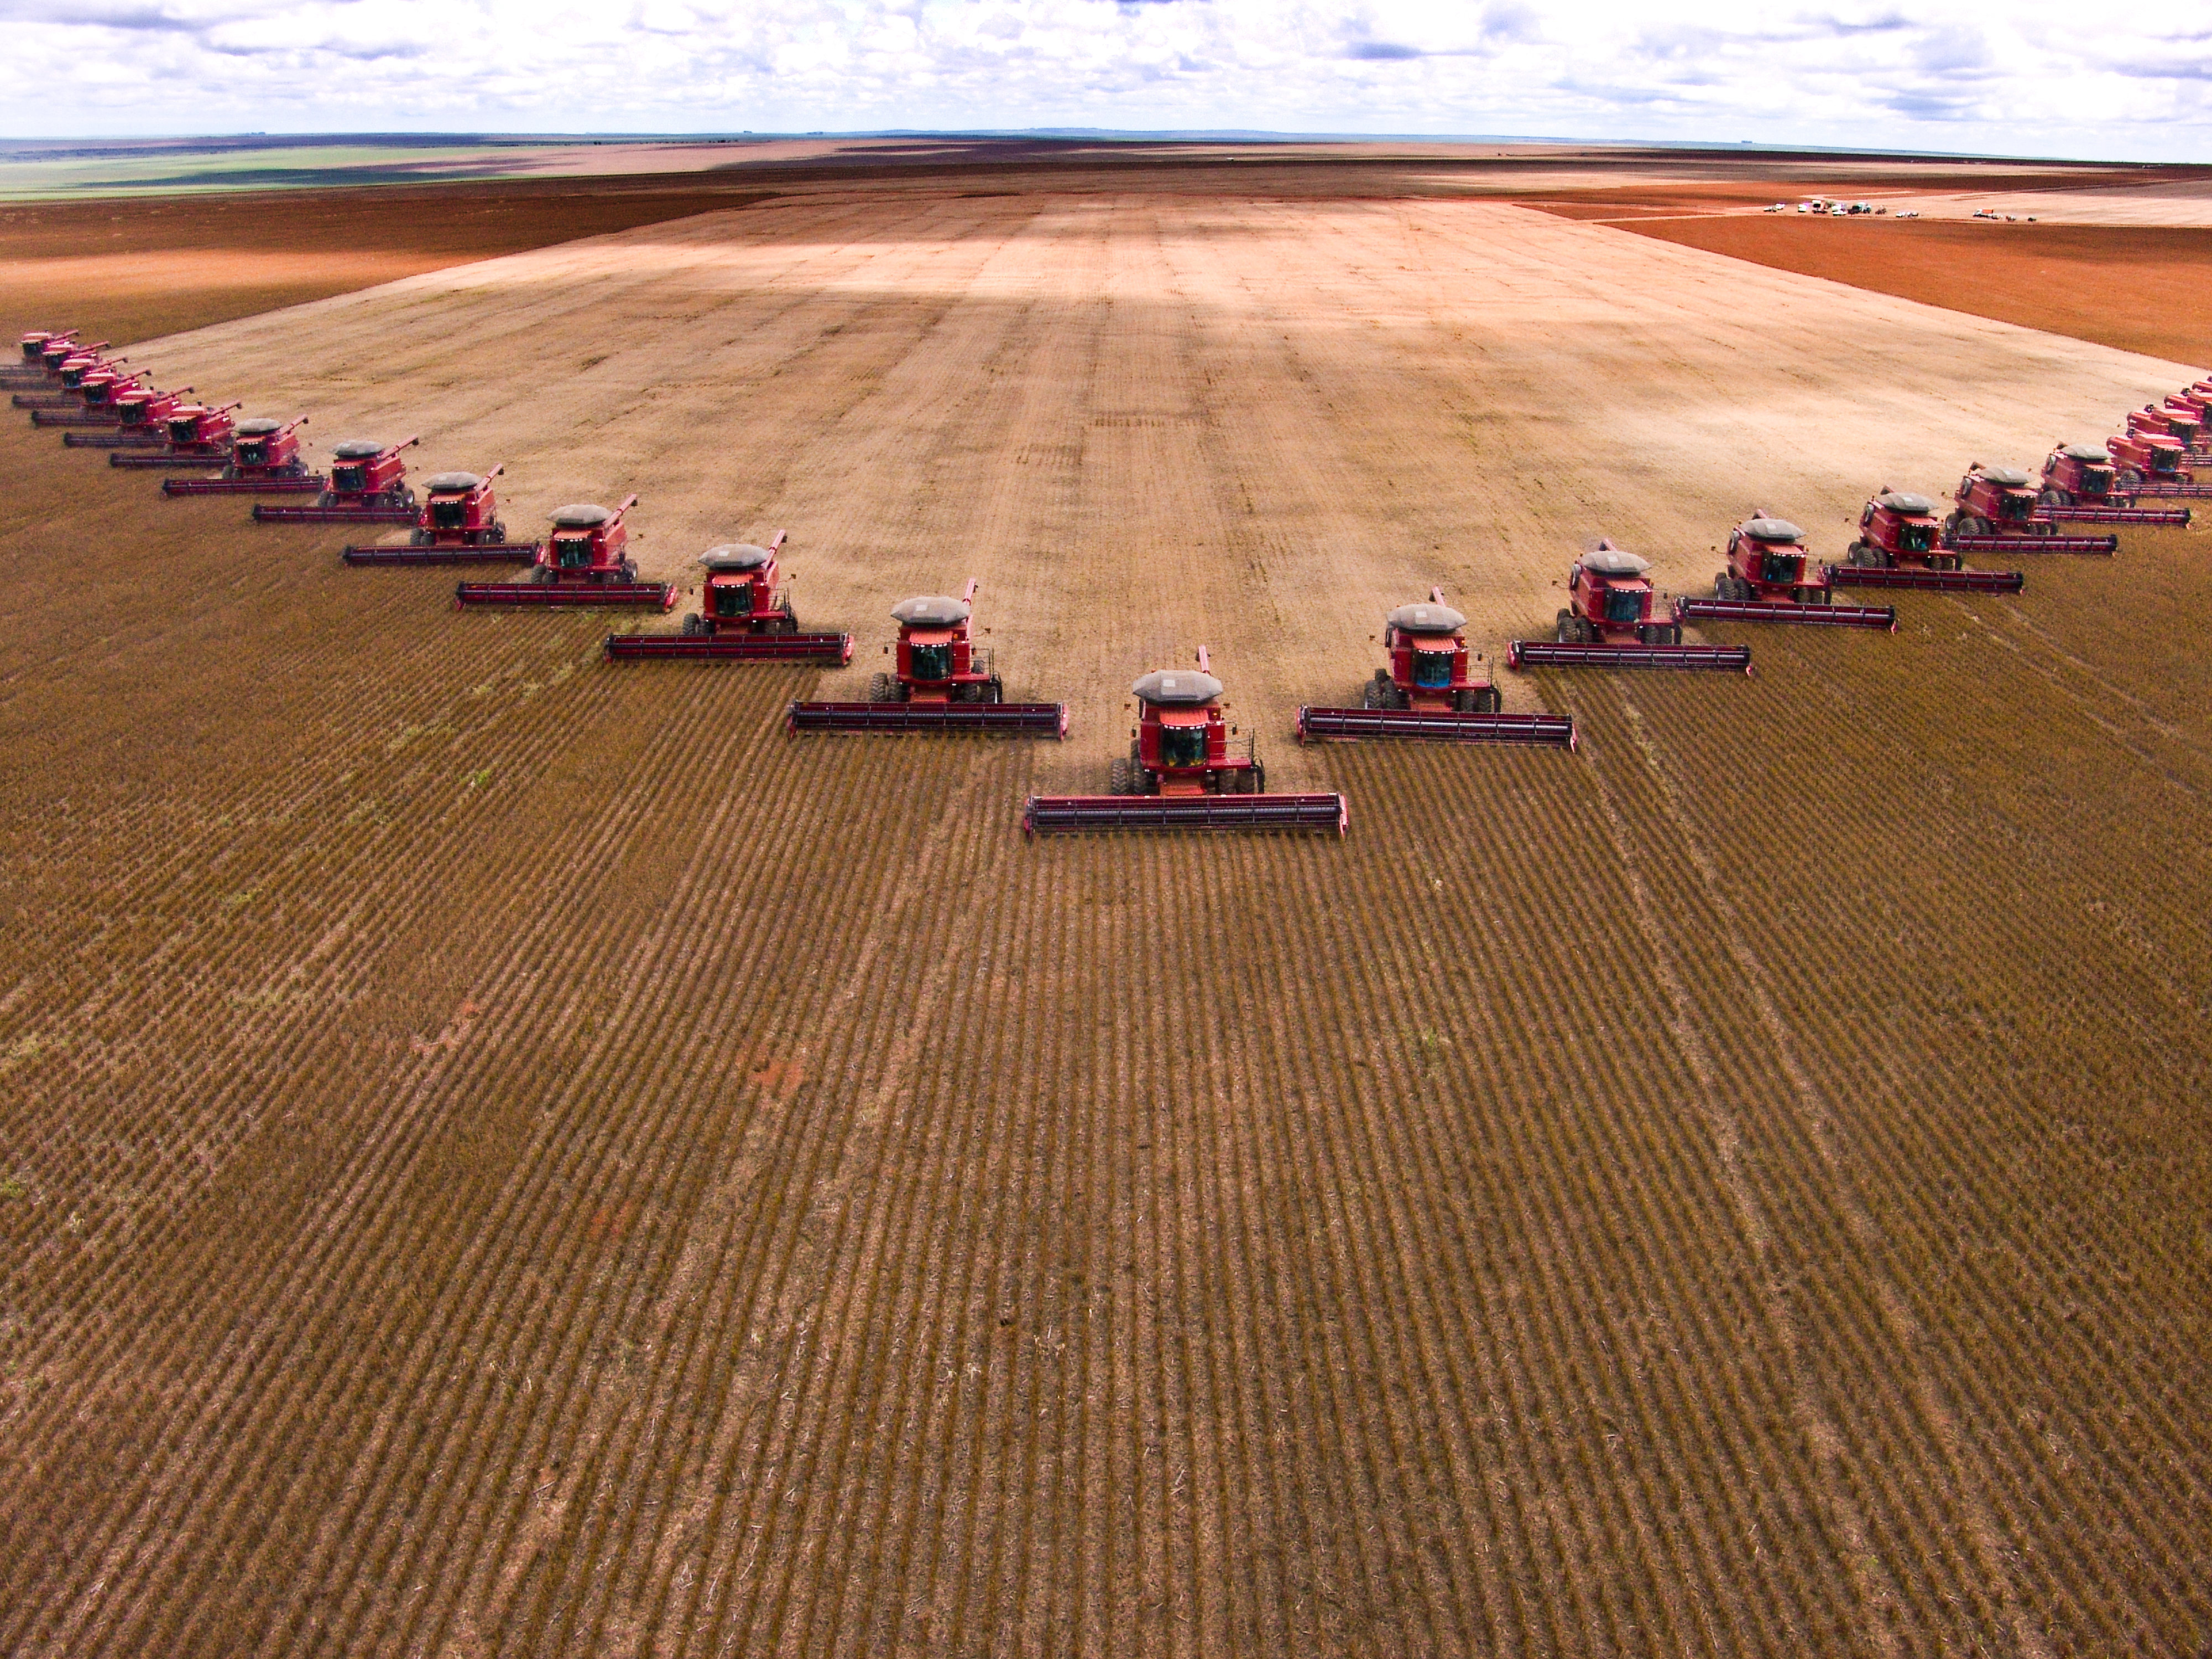 Two dozen tractors drive in a triangular pattern across a huge field.